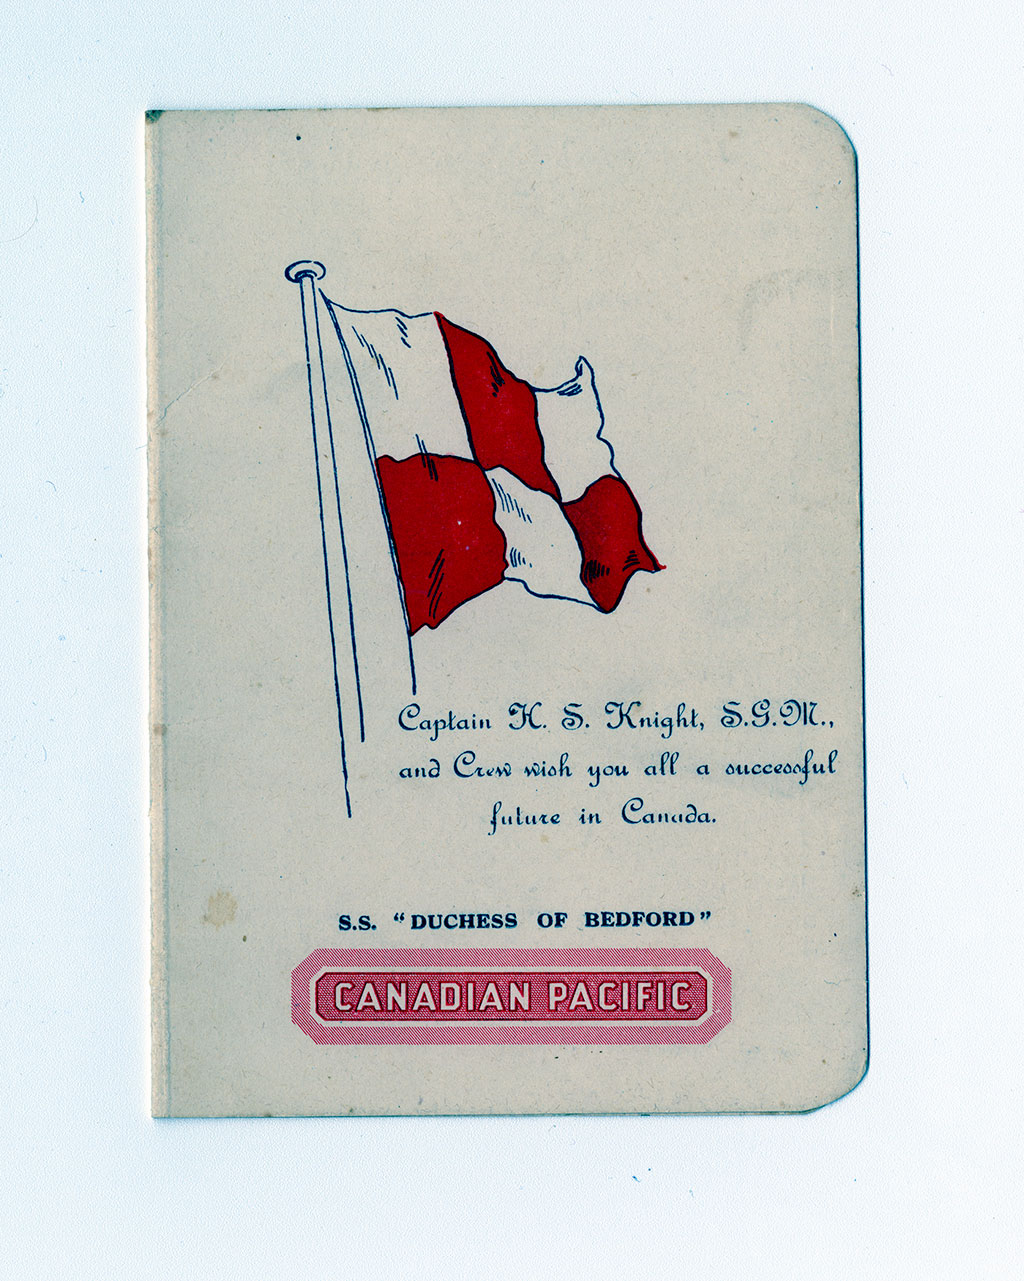 Page couverture à l'ancienne d'un menu de navire sur laquelle se trouve un drapeau rouge et blanc, ainsi que le nom du navire et de son capitaine.